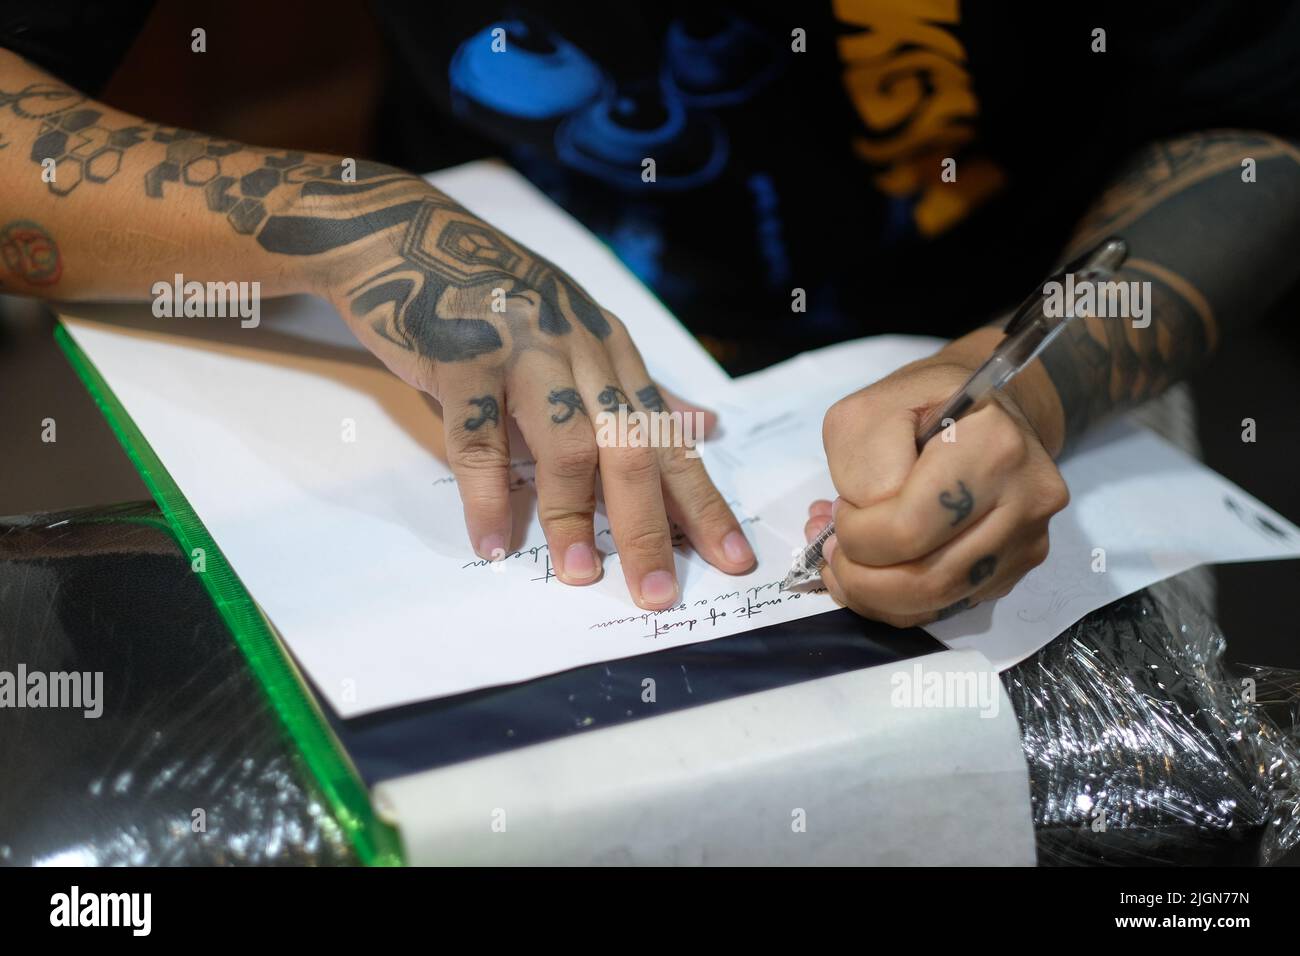 Professioneller Tattoo-Künstler, Arme gefüllt mit grafischen Designs, Schablonen kursive Schrift auf weißem Papier mit einem Stift zur Vorbereitung auf eine Tattoo-Sitzung. Stockfoto